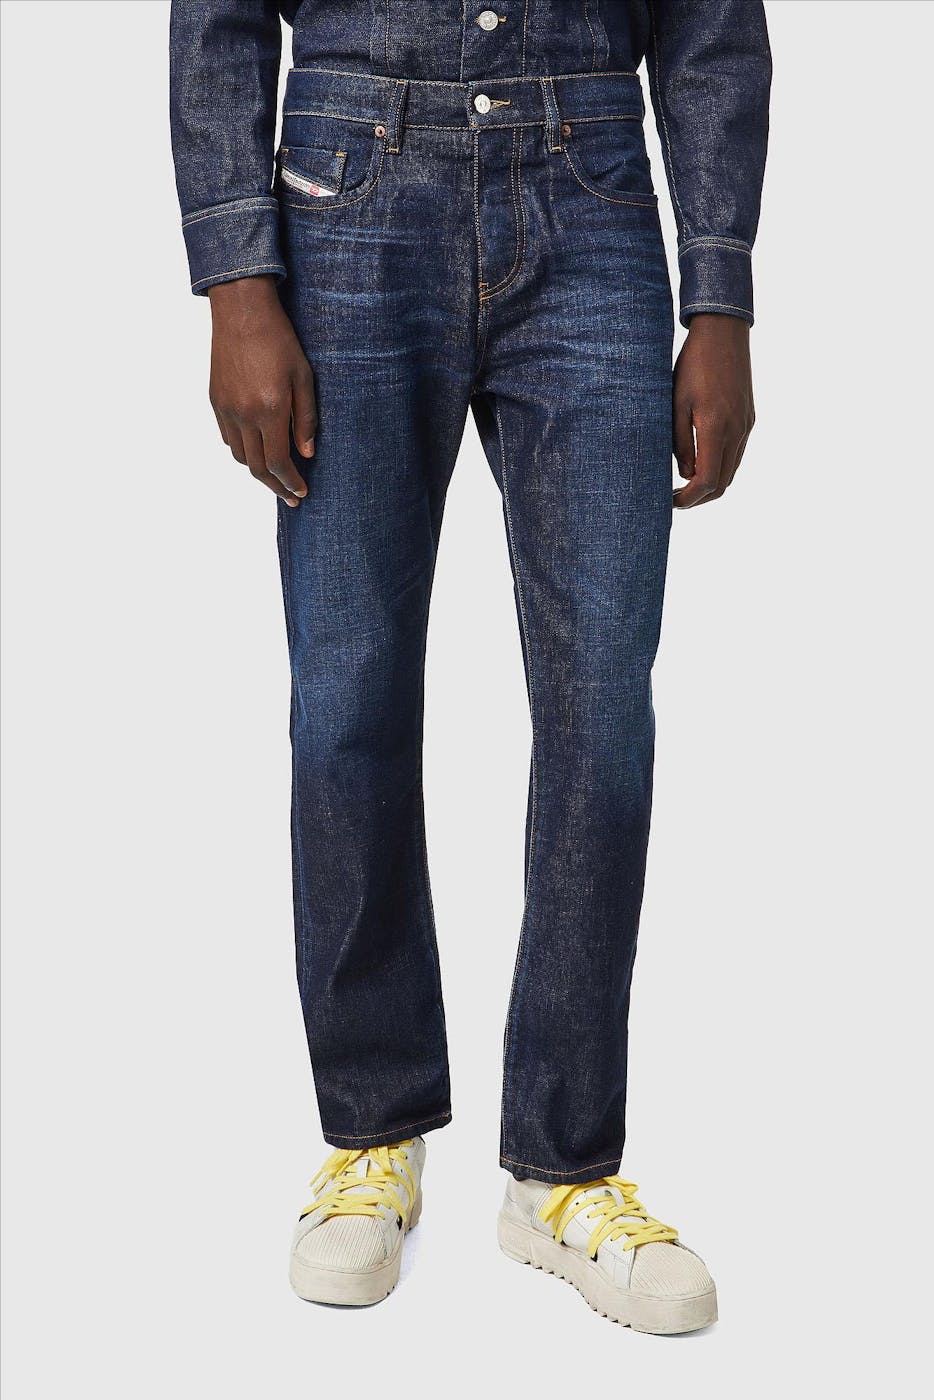 Diesel - Donkerblauwe D-Viker straight jeans